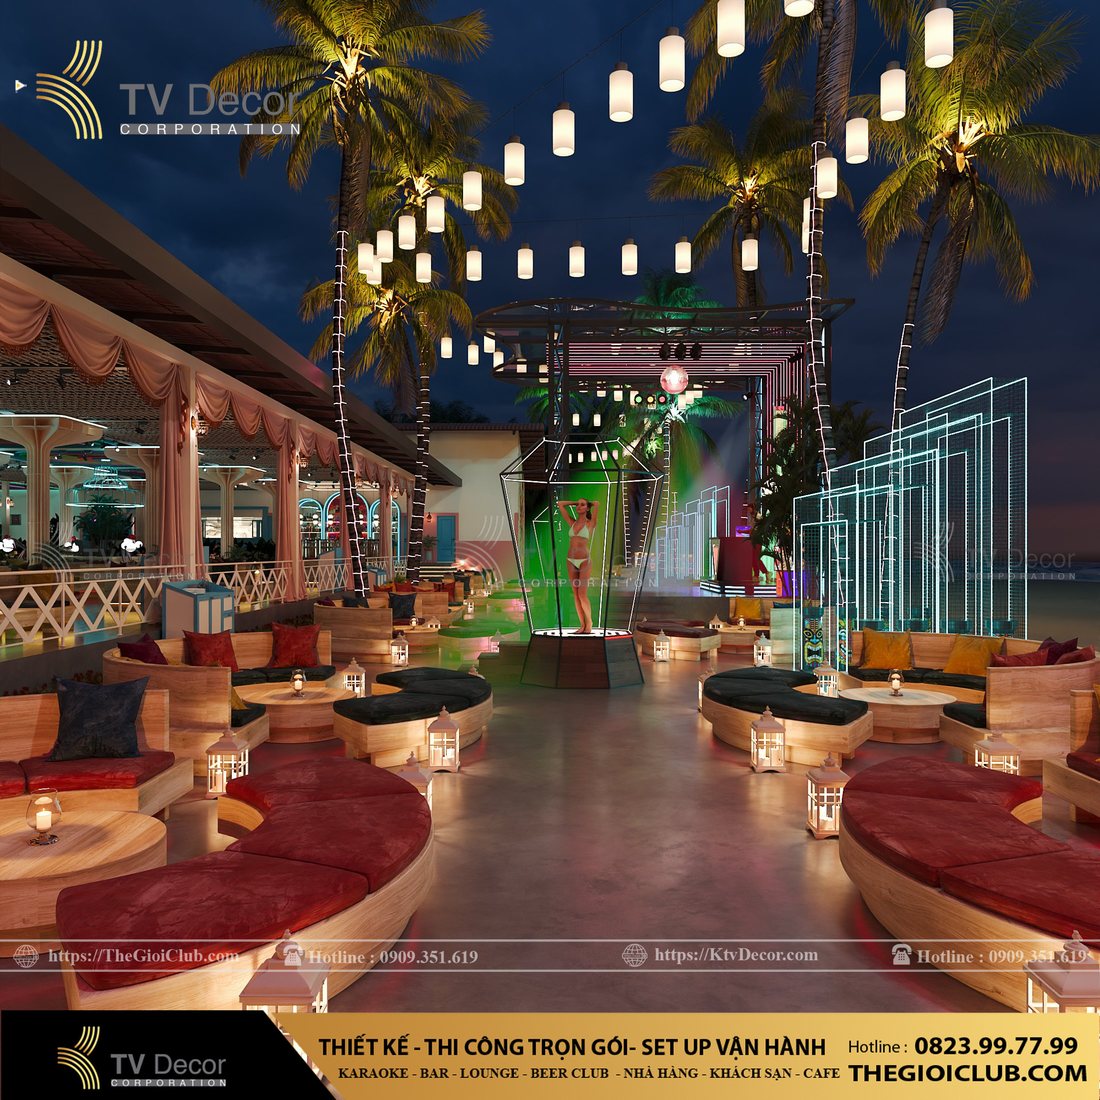 Thiết kế Lounge tại Phan Thiết Bình Thuận 18